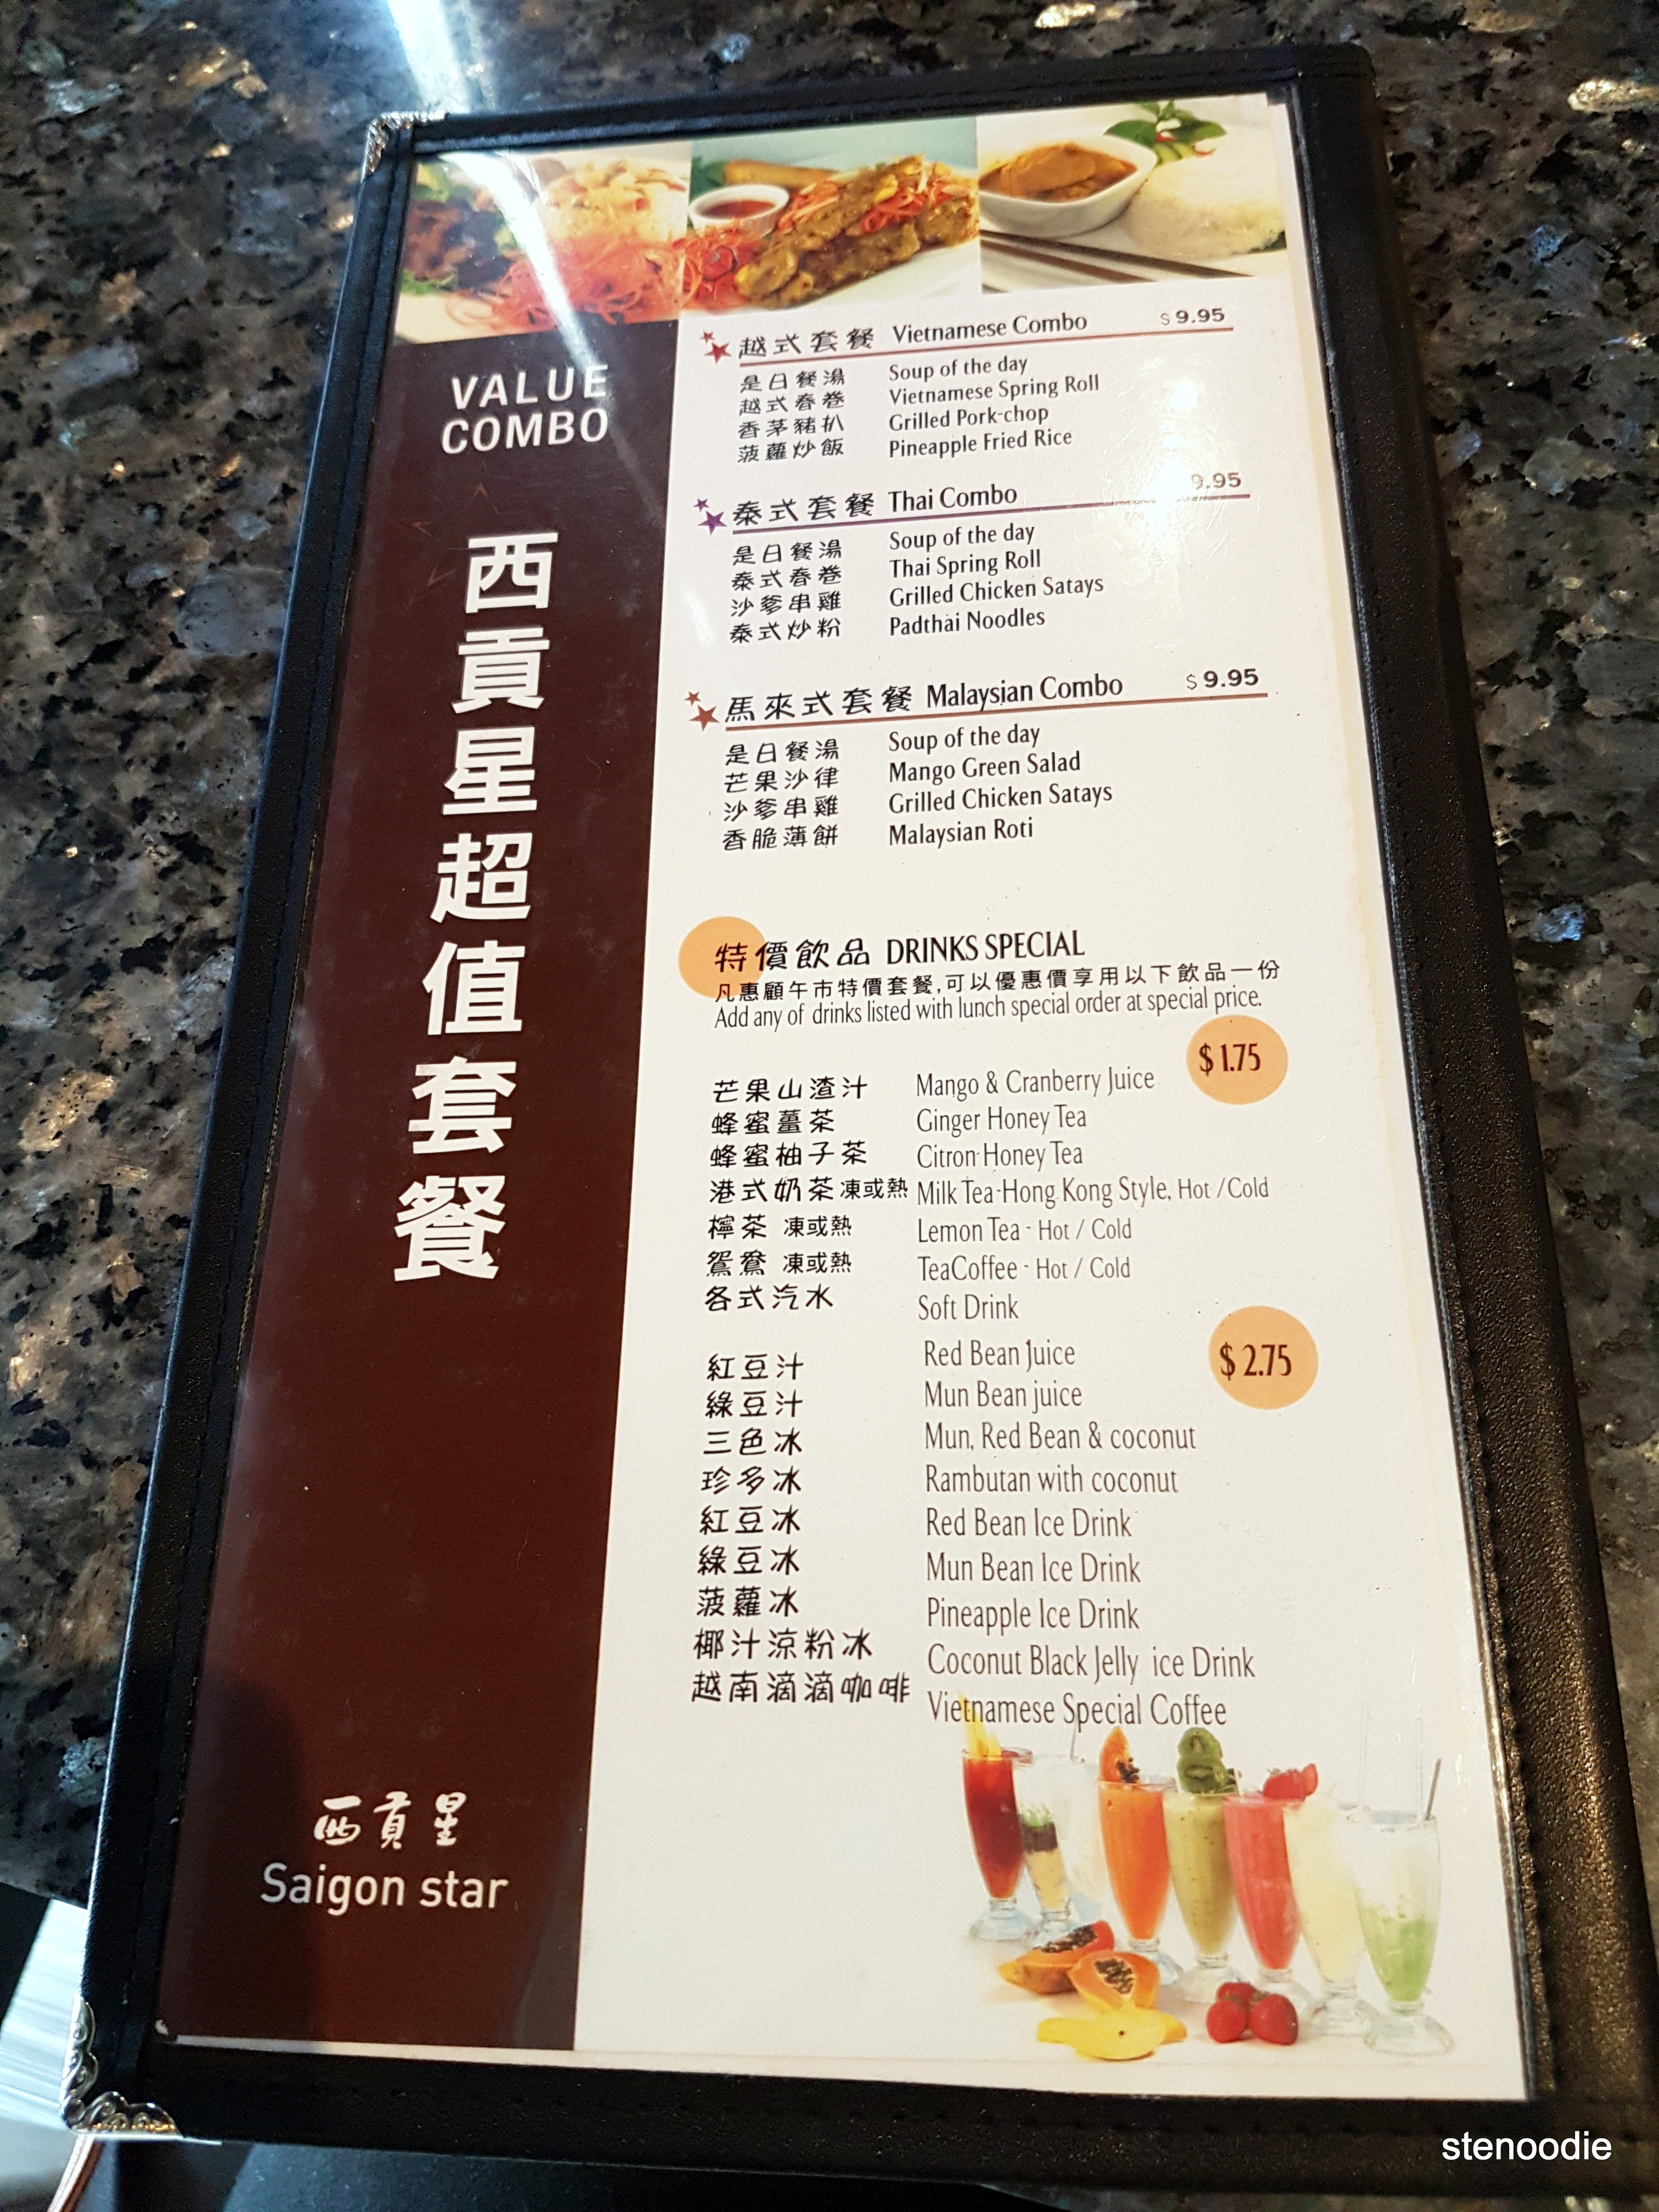  Saigon Star menu and prices